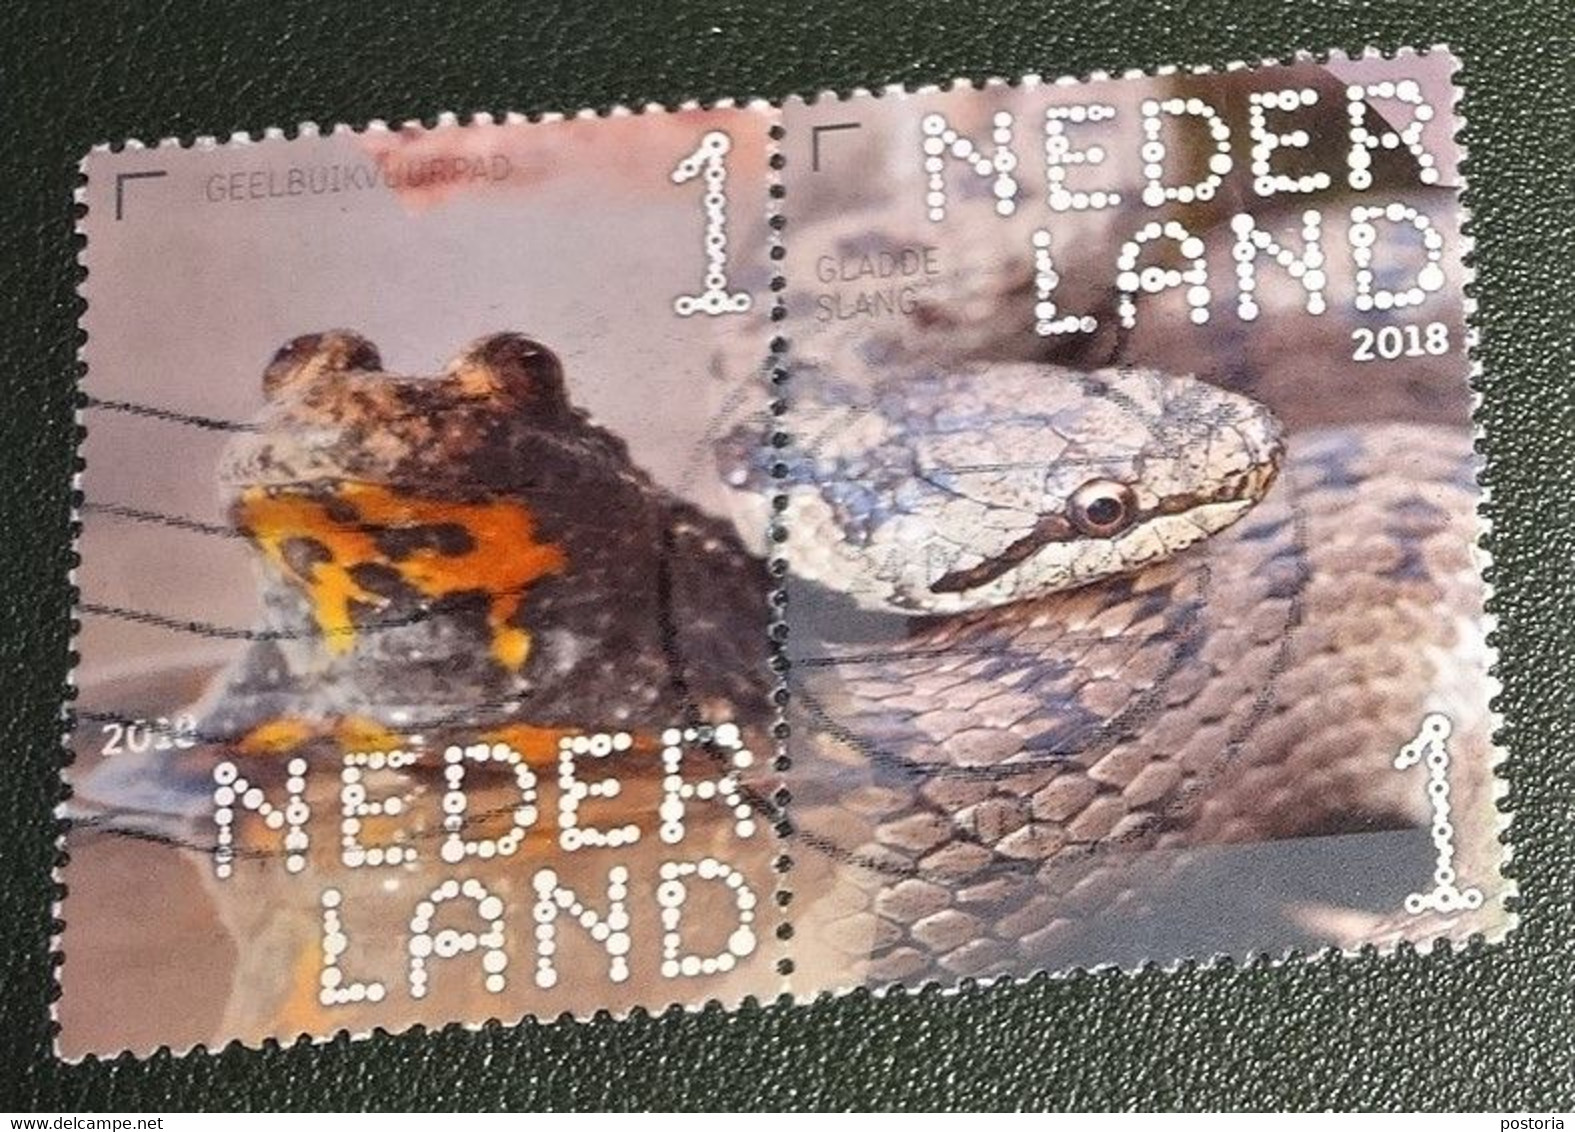 Nederland - NVPH - Xxxx - 2018 - Gebruikt - Beleef De Natuur - Paar - Geelbuikvuurpad - Gladde Slang - Used Stamps